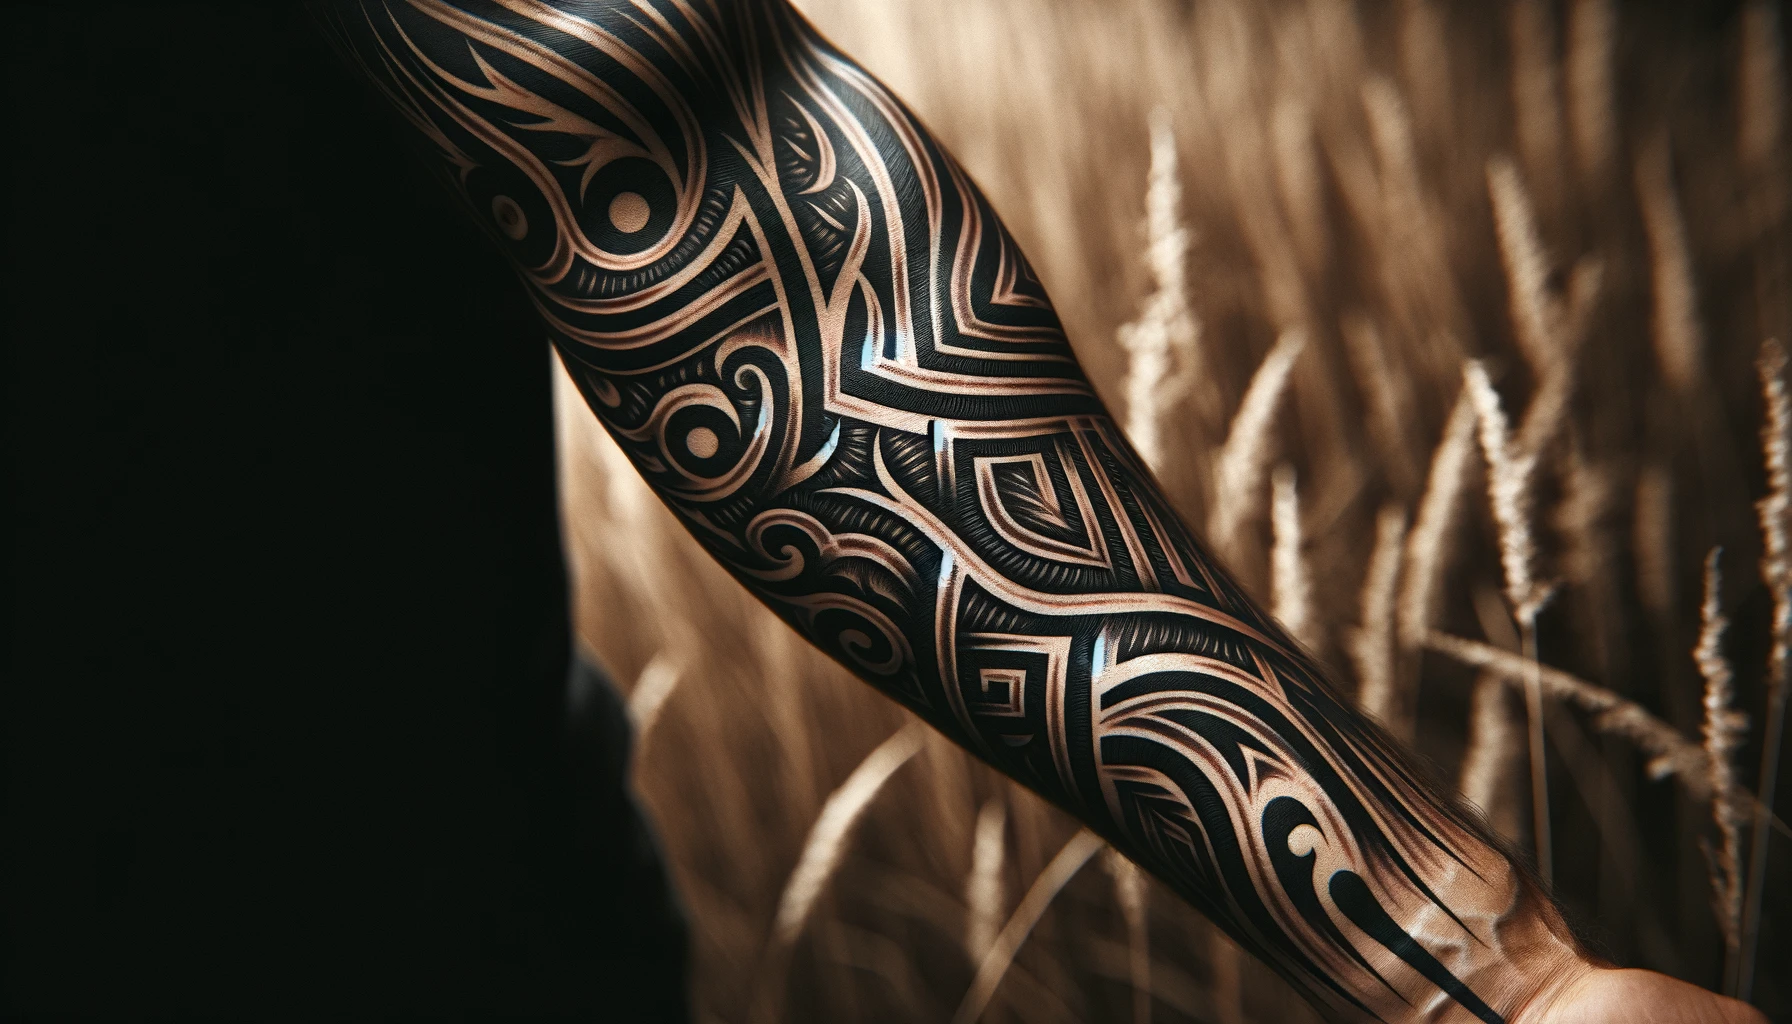 Tatuażu plemiennego na przedramieniu mężczyzny. Tatuaż zawiera skomplikowane wzory czarnego tuszu, typowe dla projektów plemiennych